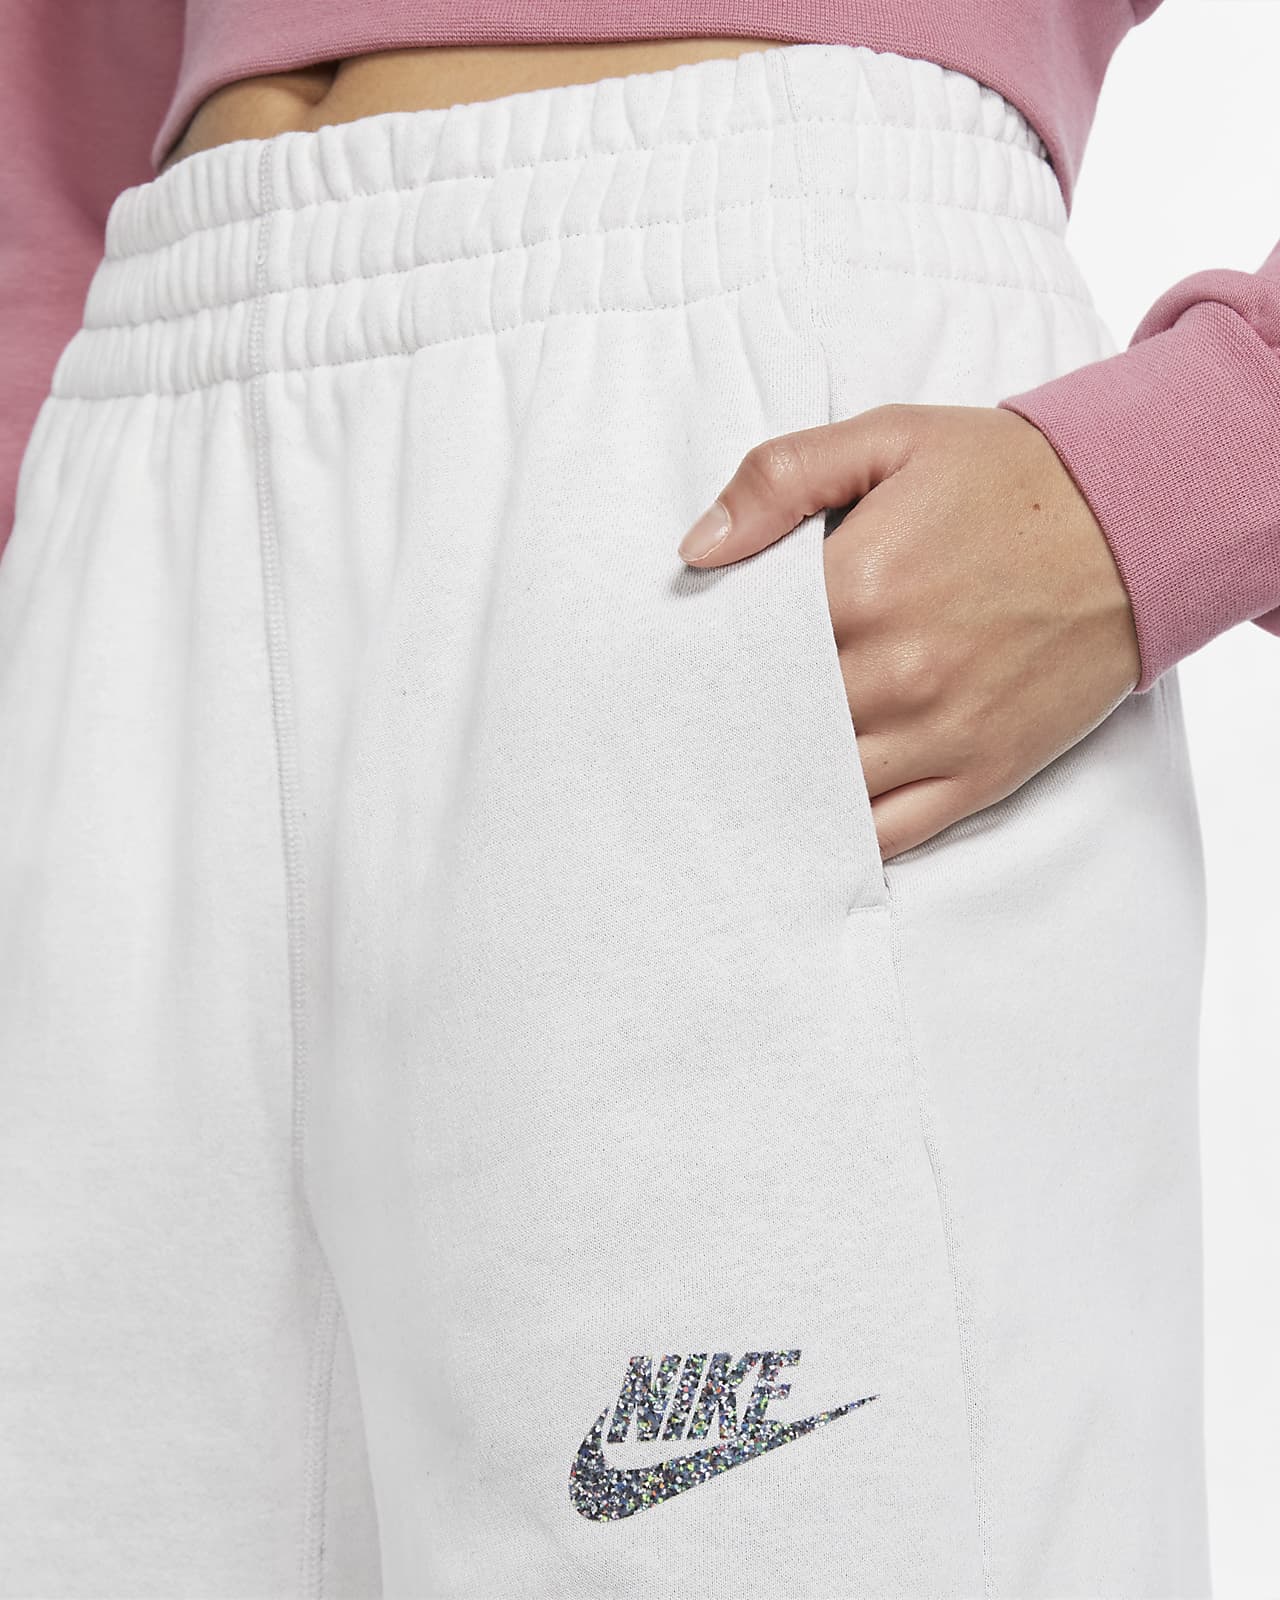 nike women sportswear shorts